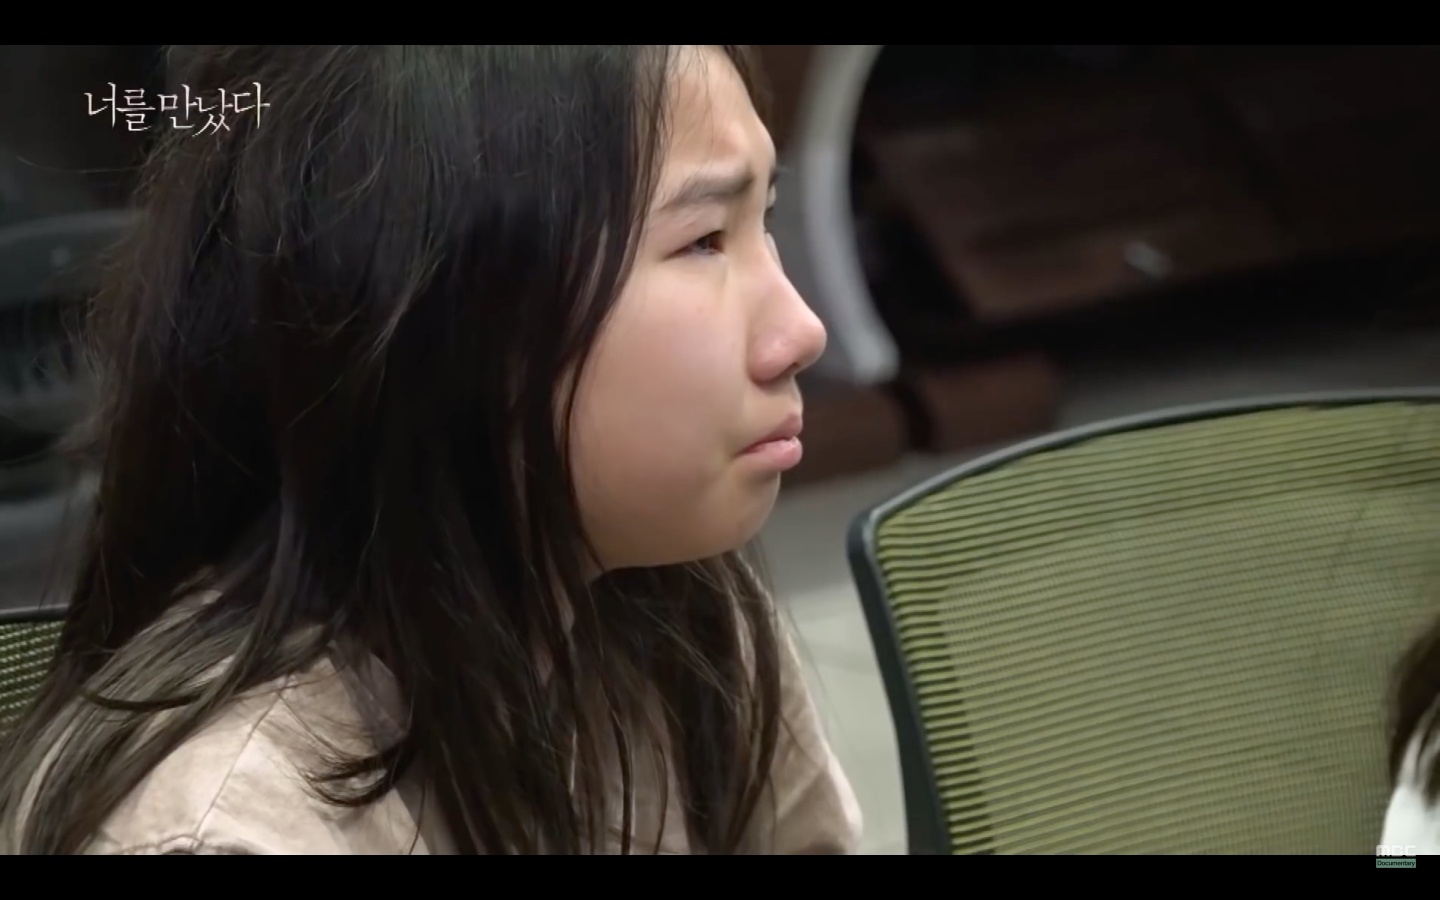 用 VR 和病逝愛女重逢！韓國節目打造虛擬實境，幫助一位母親走出傷痛，感動百萬網友